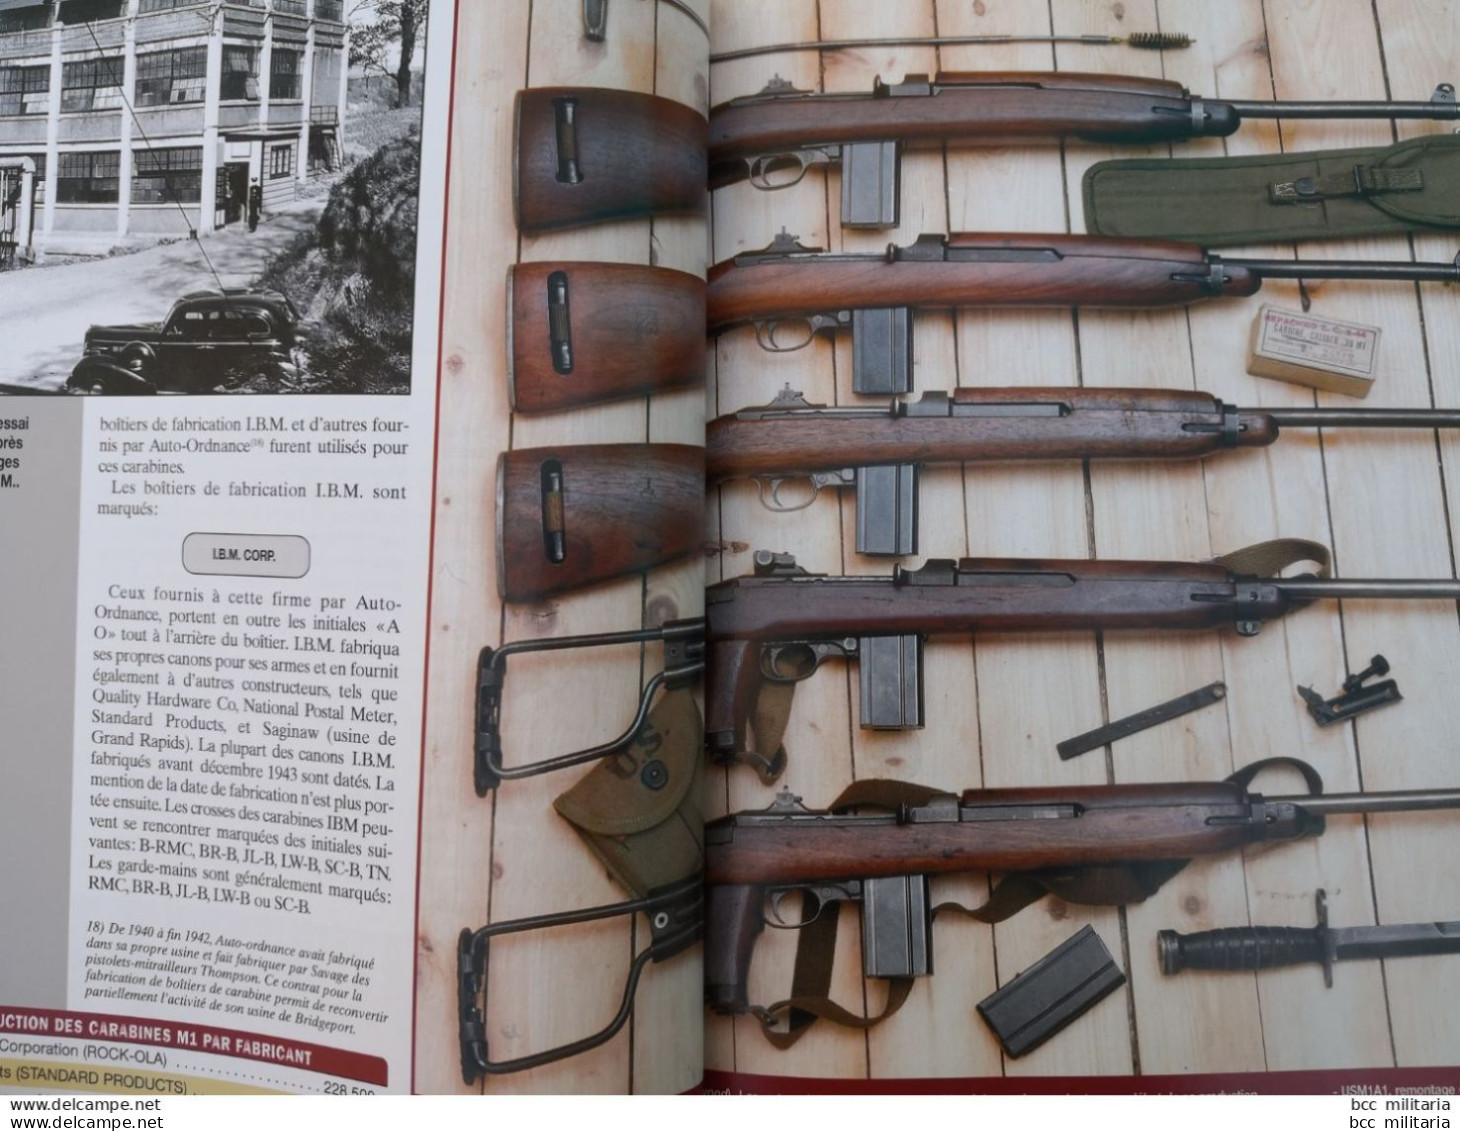 L'US M1 La carabine de la libération - Gazette des armes n° 14 Hors série ( revue neuve de stock )